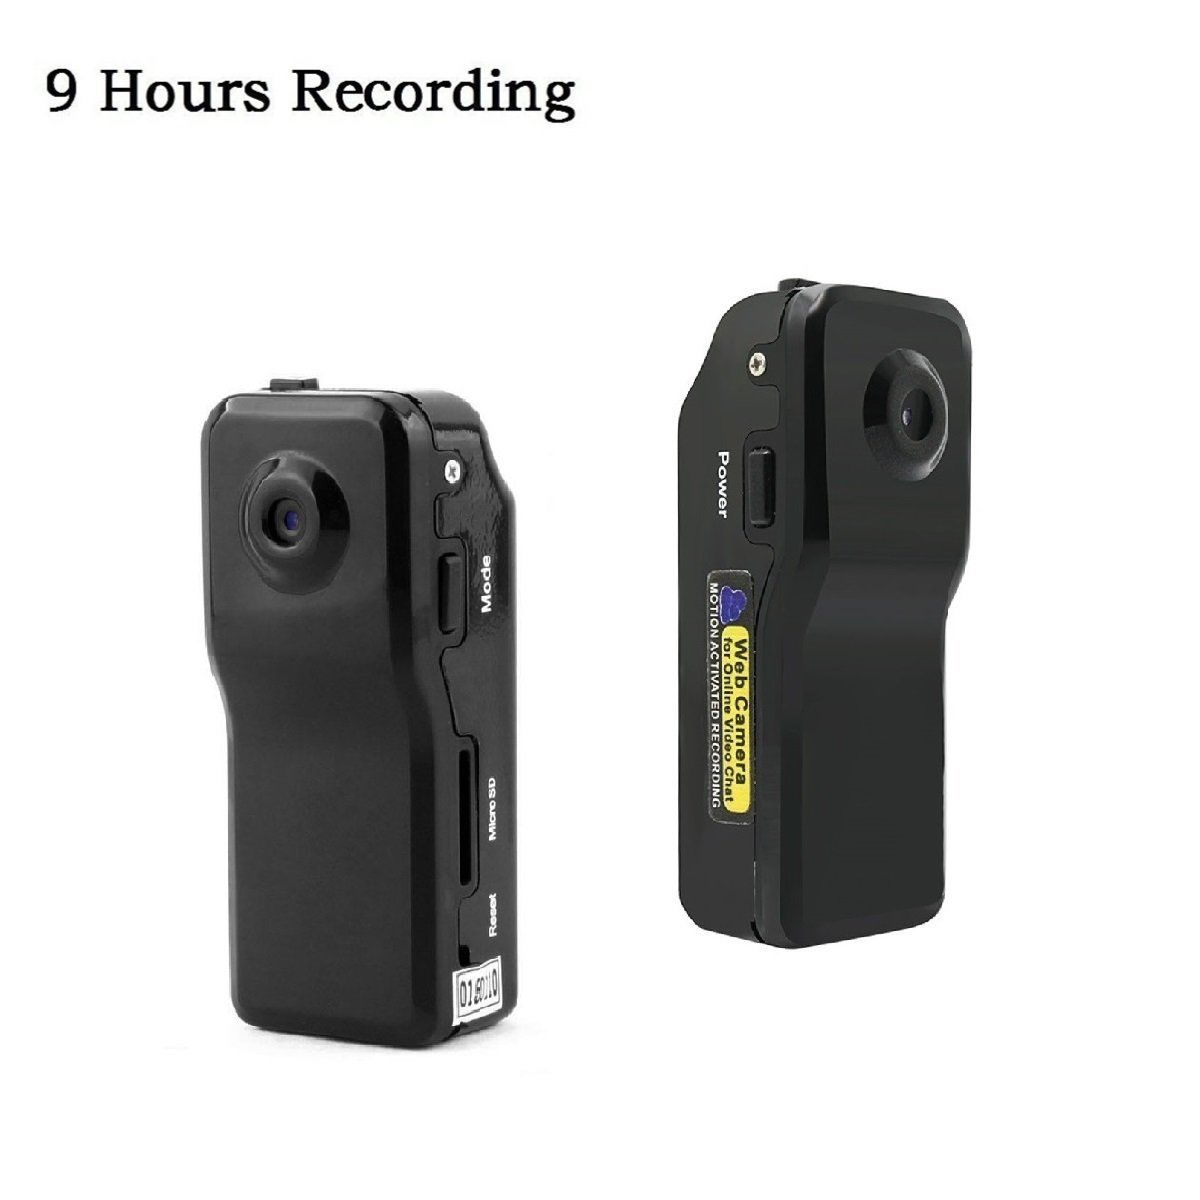 Motion Detection нь Mini тагнуул камер 960P HD Нууц дуу чимээ идэвхижүүлэлт эм